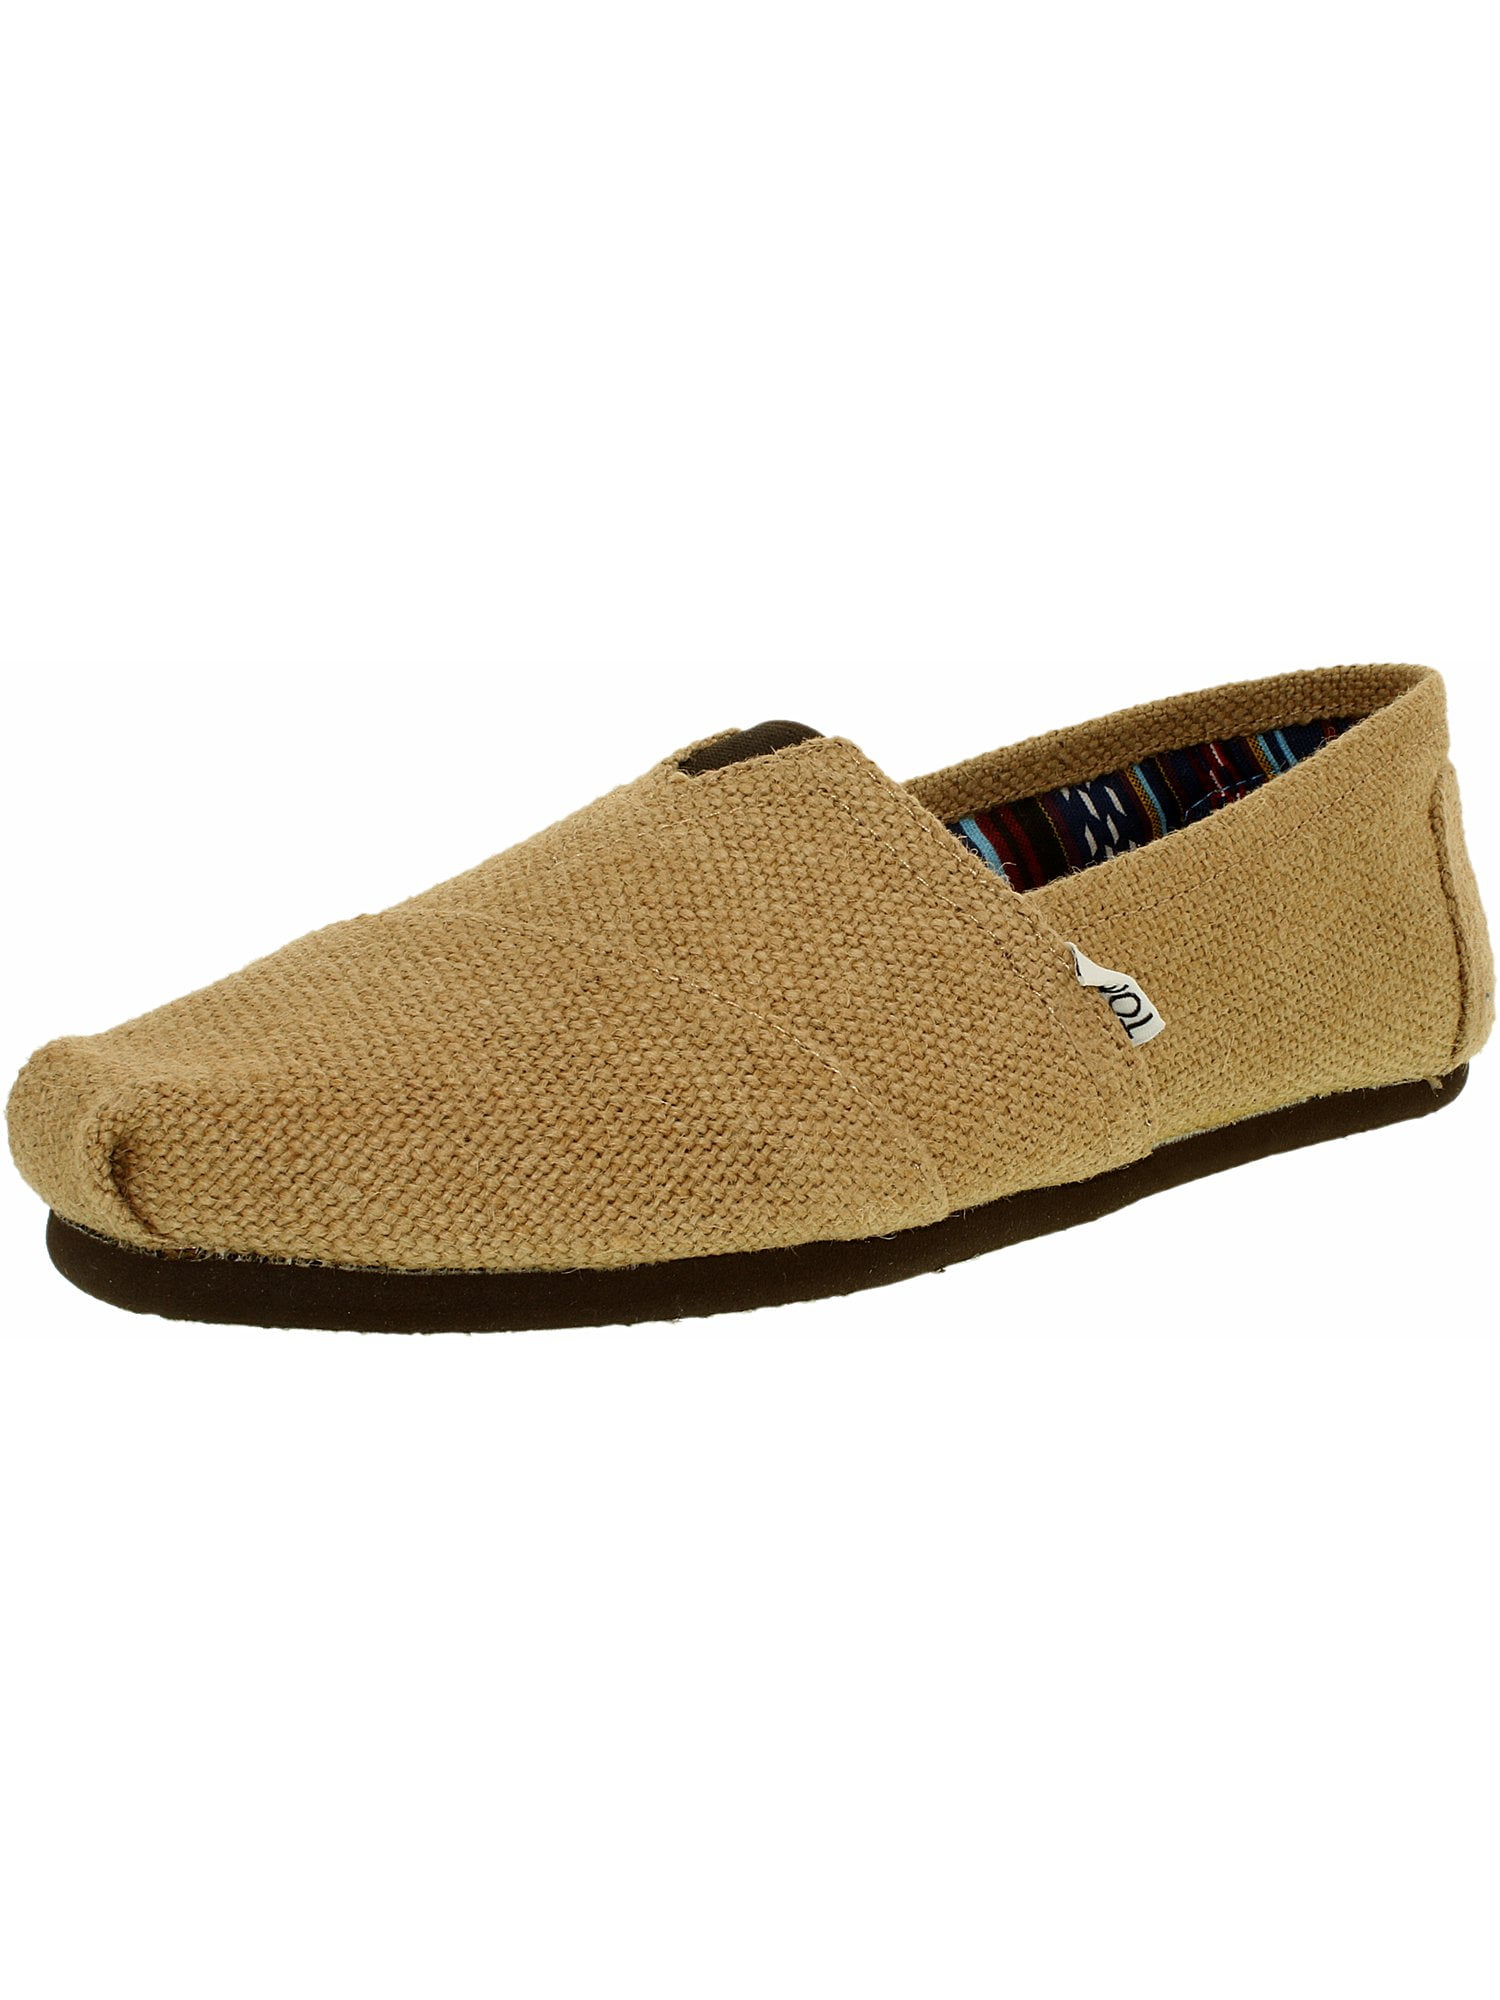 Toms Men's Alpargata Burlap Natural Ankle-High Fabric Flat Shoe - 10.5M ...